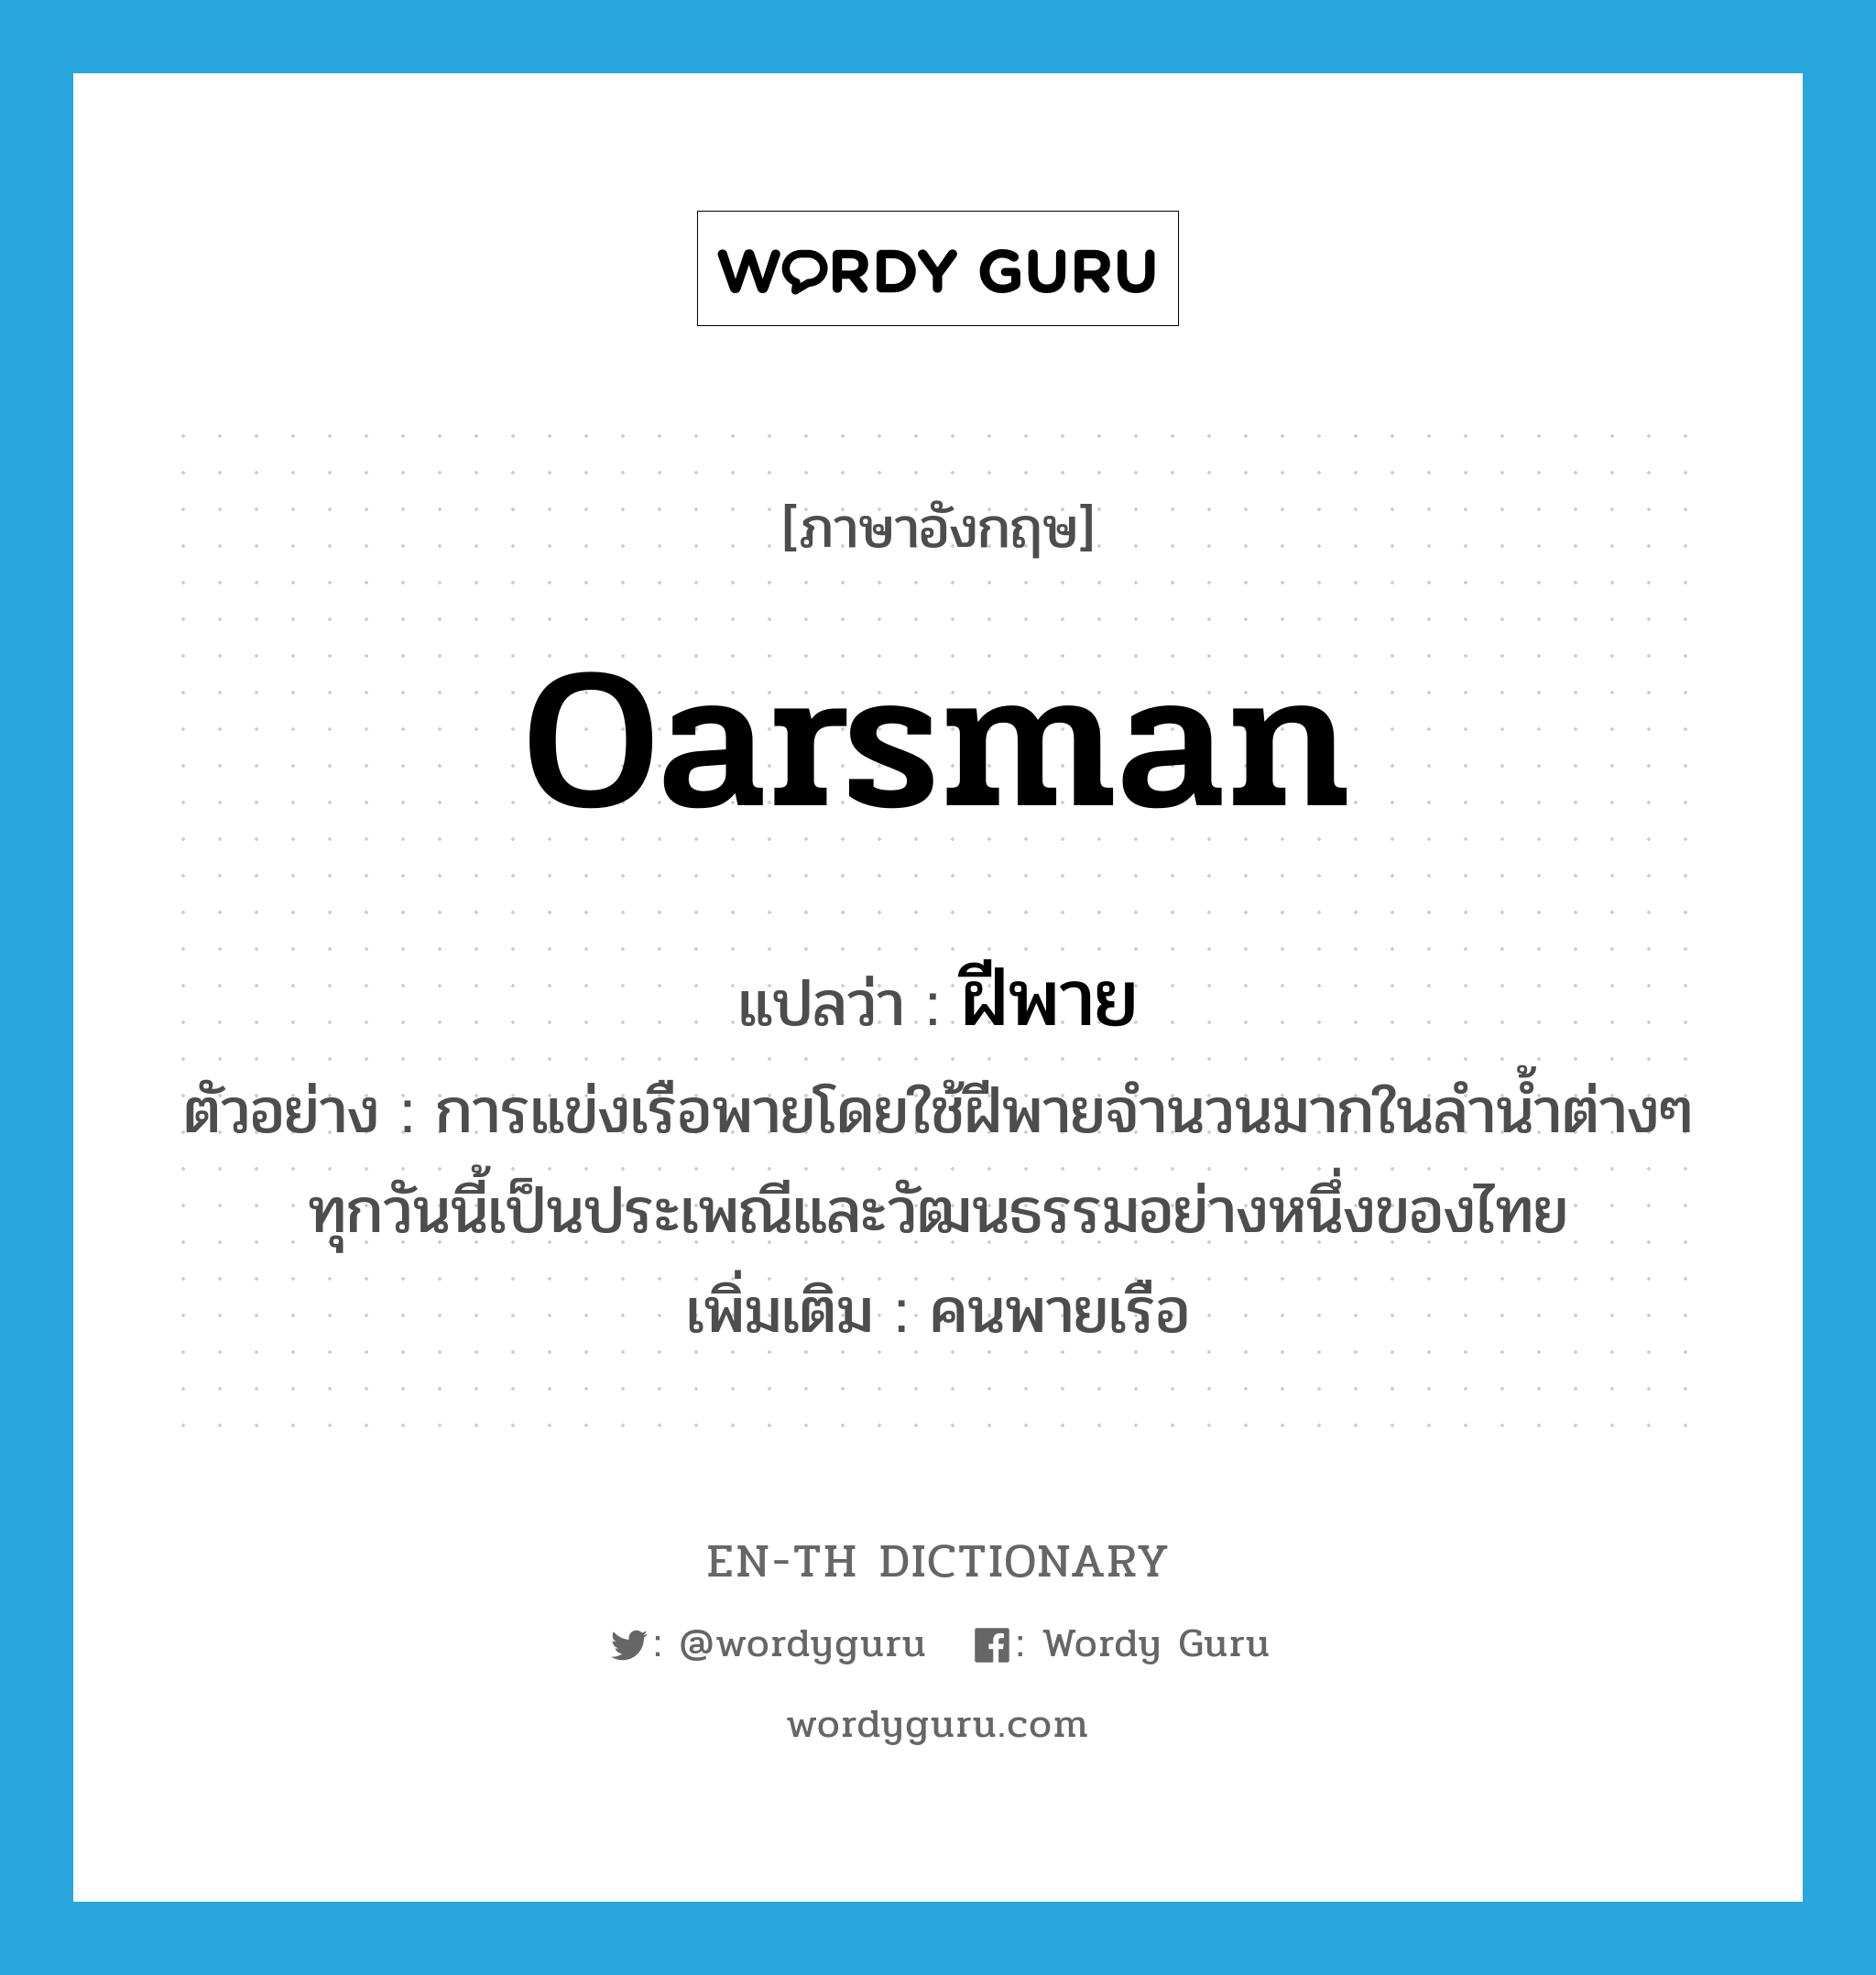 oarsman แปลว่า?, คำศัพท์ภาษาอังกฤษ oarsman แปลว่า ฝีพาย ประเภท N ตัวอย่าง การแข่งเรือพายโดยใช้ฝีพายจำนวนมากในลำน้ำต่างๆ ทุกวันนี้เป็นประเพณีและวัฒนธรรมอย่างหนึ่งของไทย เพิ่มเติม คนพายเรือ หมวด N